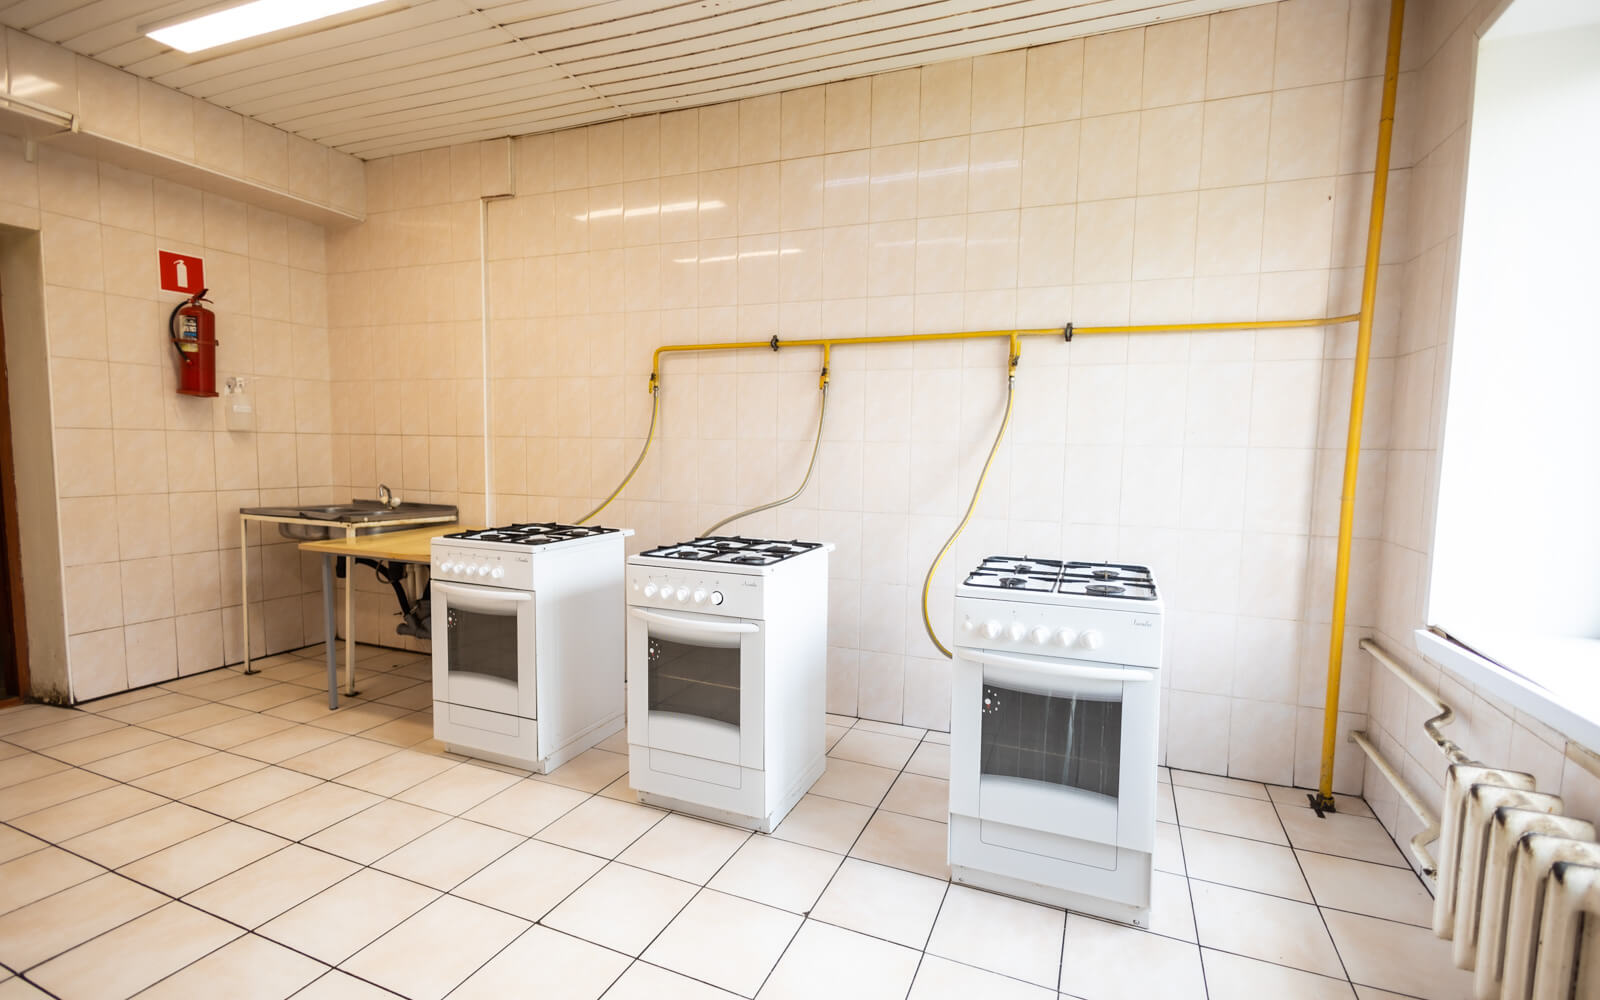 На кухнях в общежитиях есть кухонные плиты и раковины для посуды, чтобы обеспечить комфортное приготовление еды.